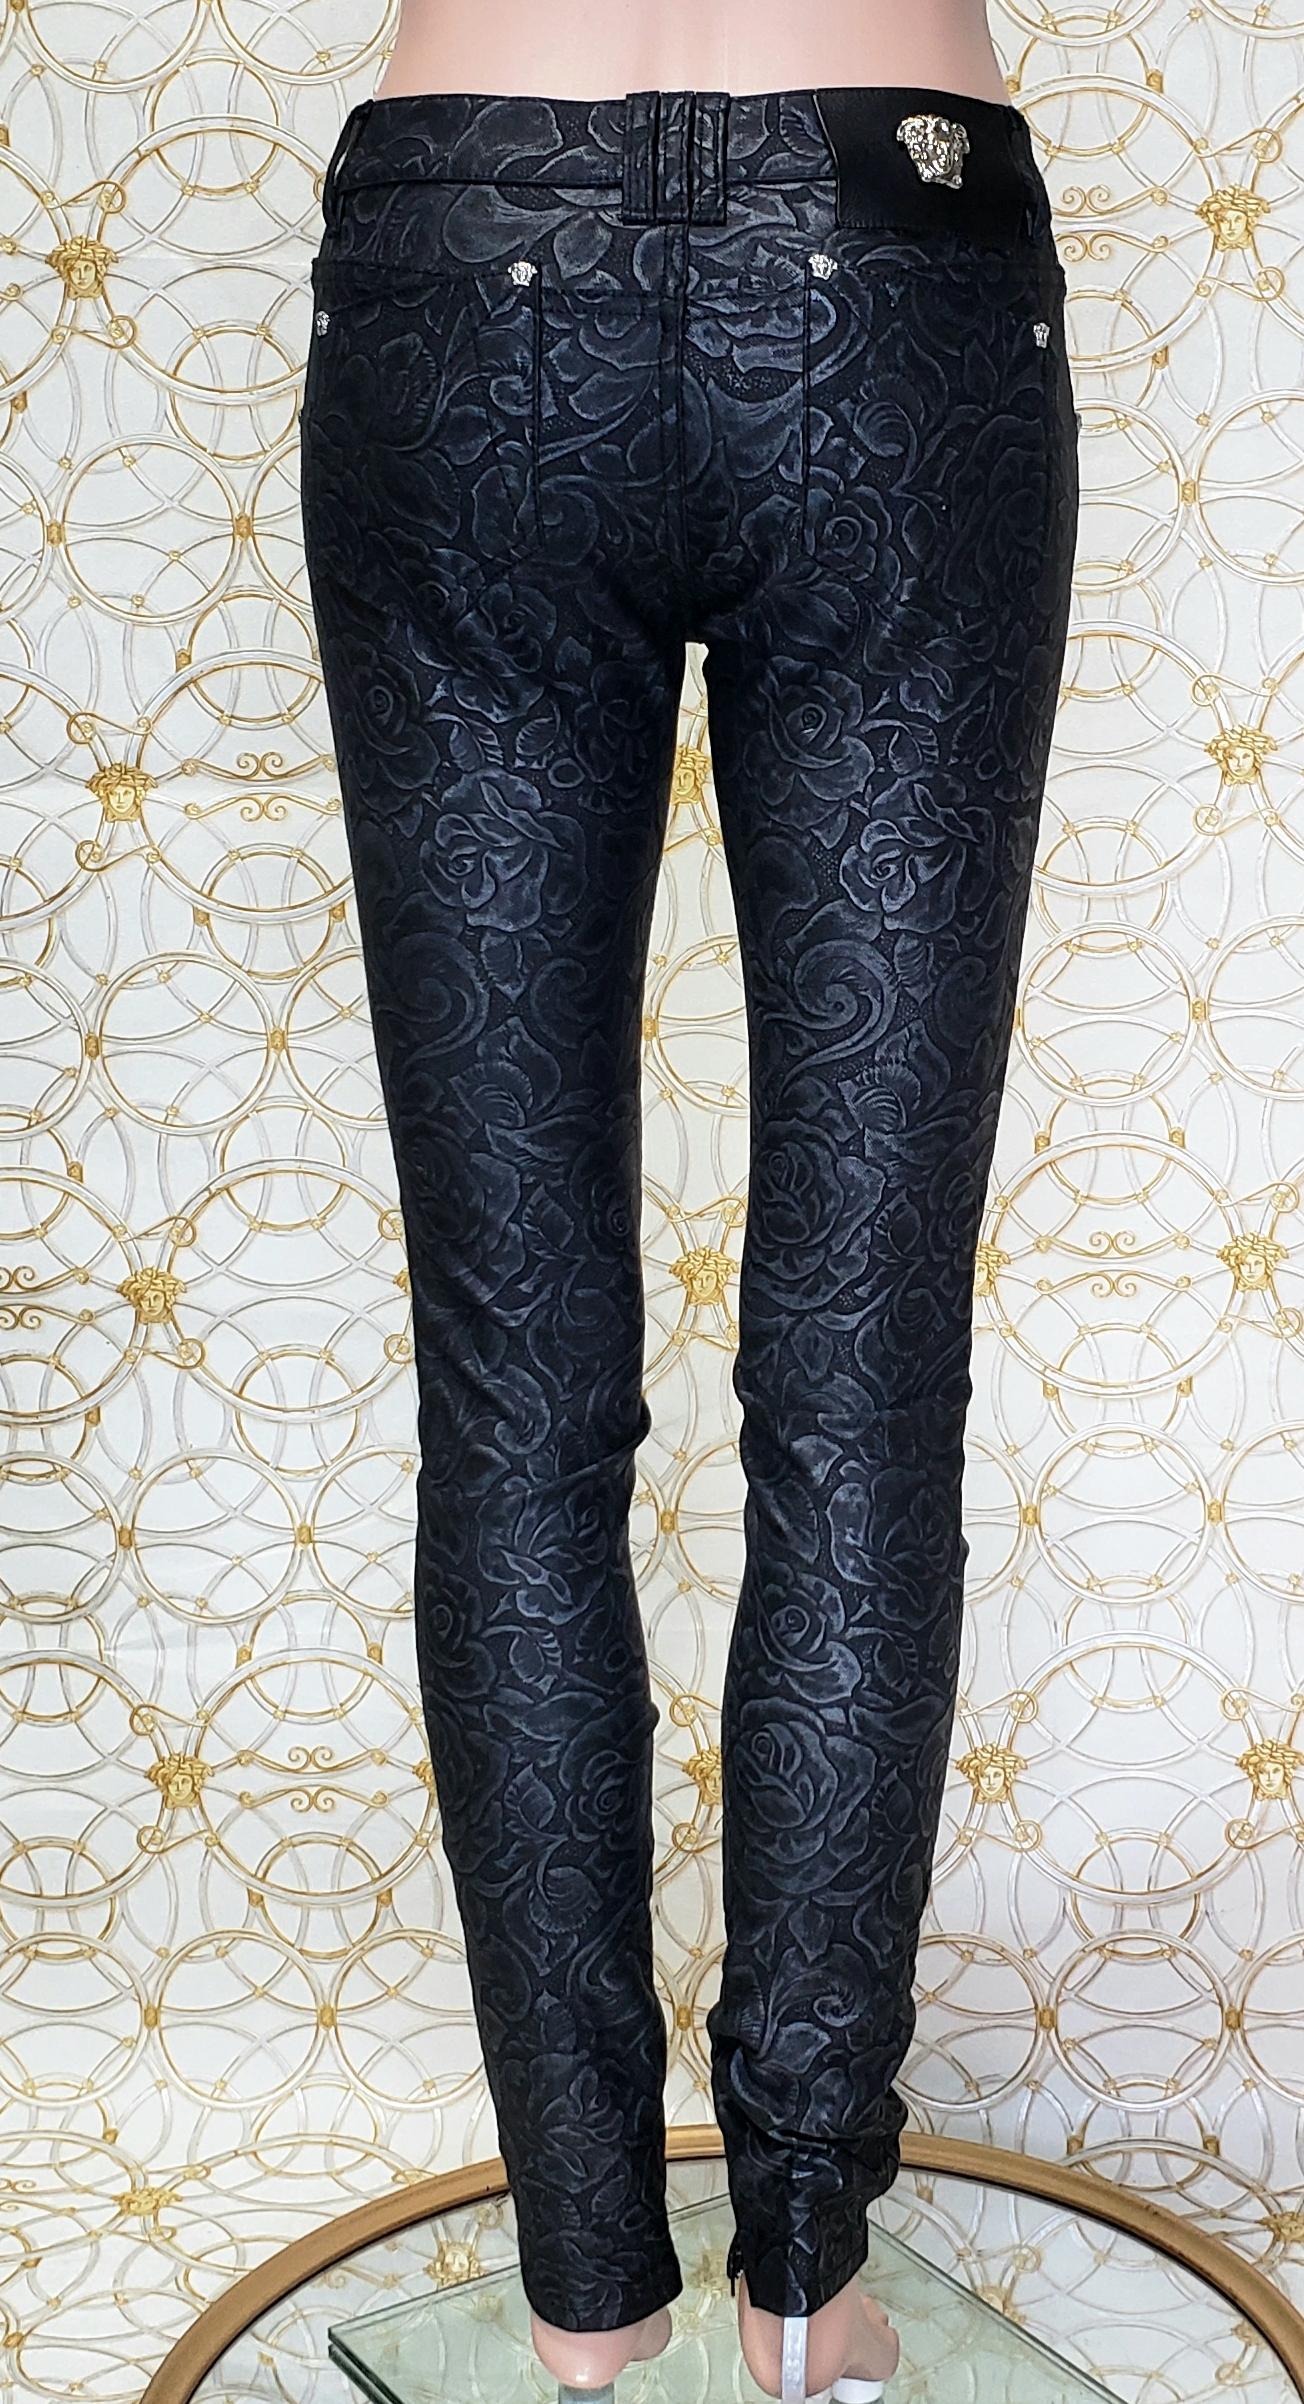 Black S/S 2014 Look # 5 VERSACE BLACK FLORAL JEANS PANTS size 26 For Sale